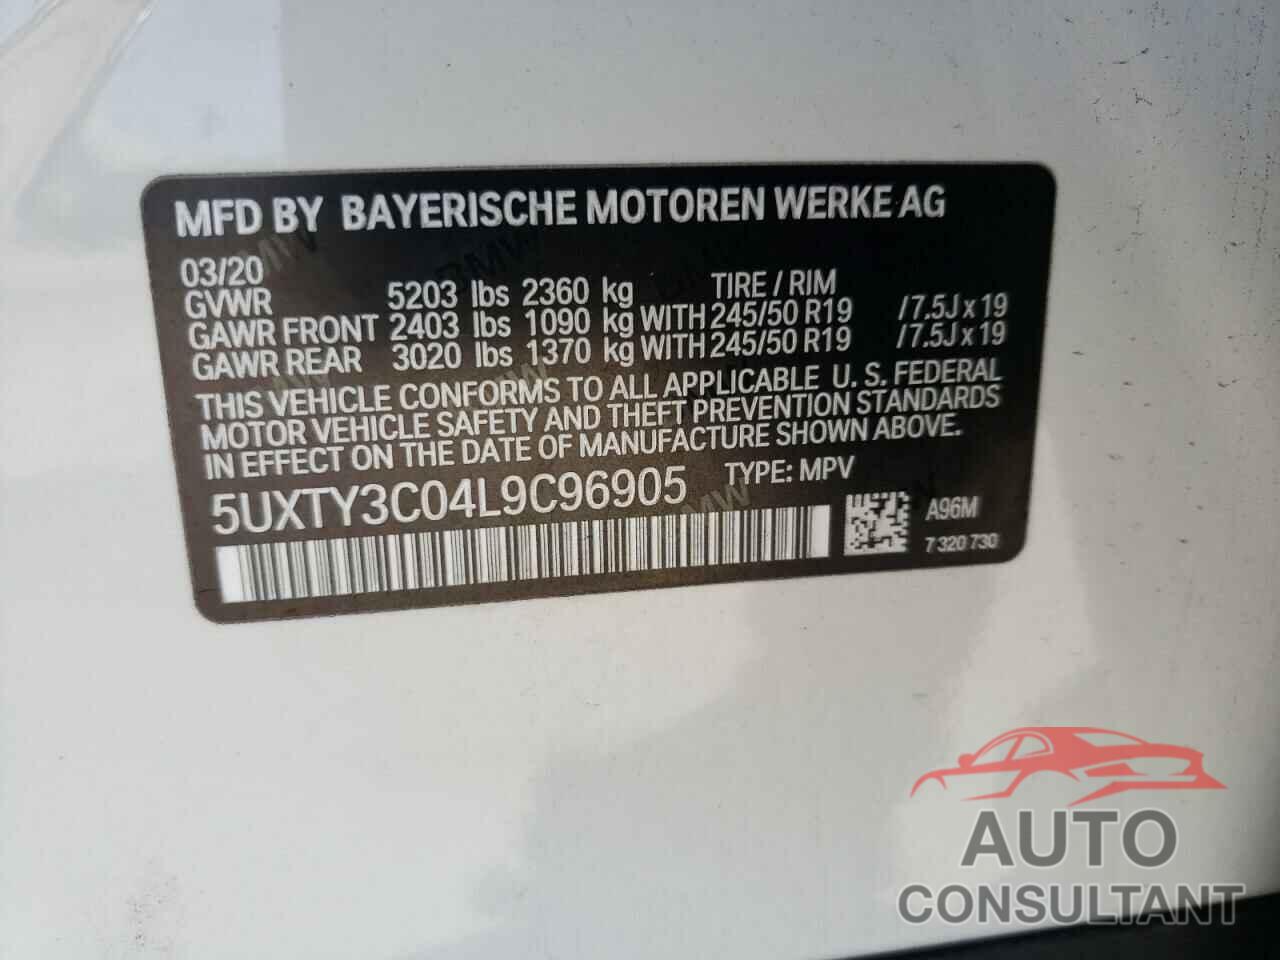 BMW X3 2020 - 5UXTY3C04L9C96905